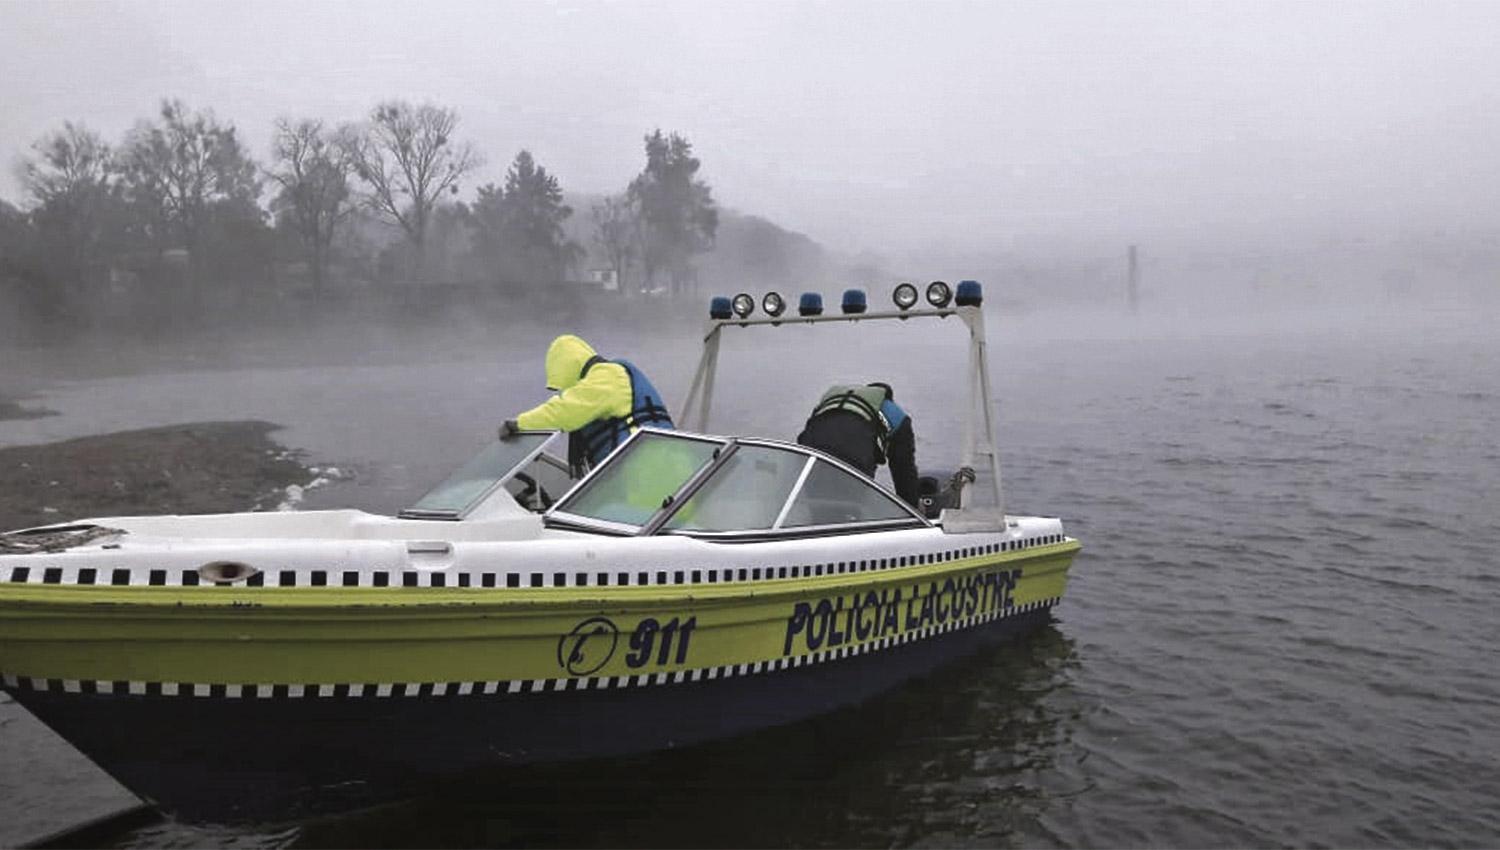 RASTRILLAJES. Buzos de la Policía y de Prefectura se internaron en el lago durante días para buscar a Jiménez y a su hijo. ARCHIVO LA GACETA

